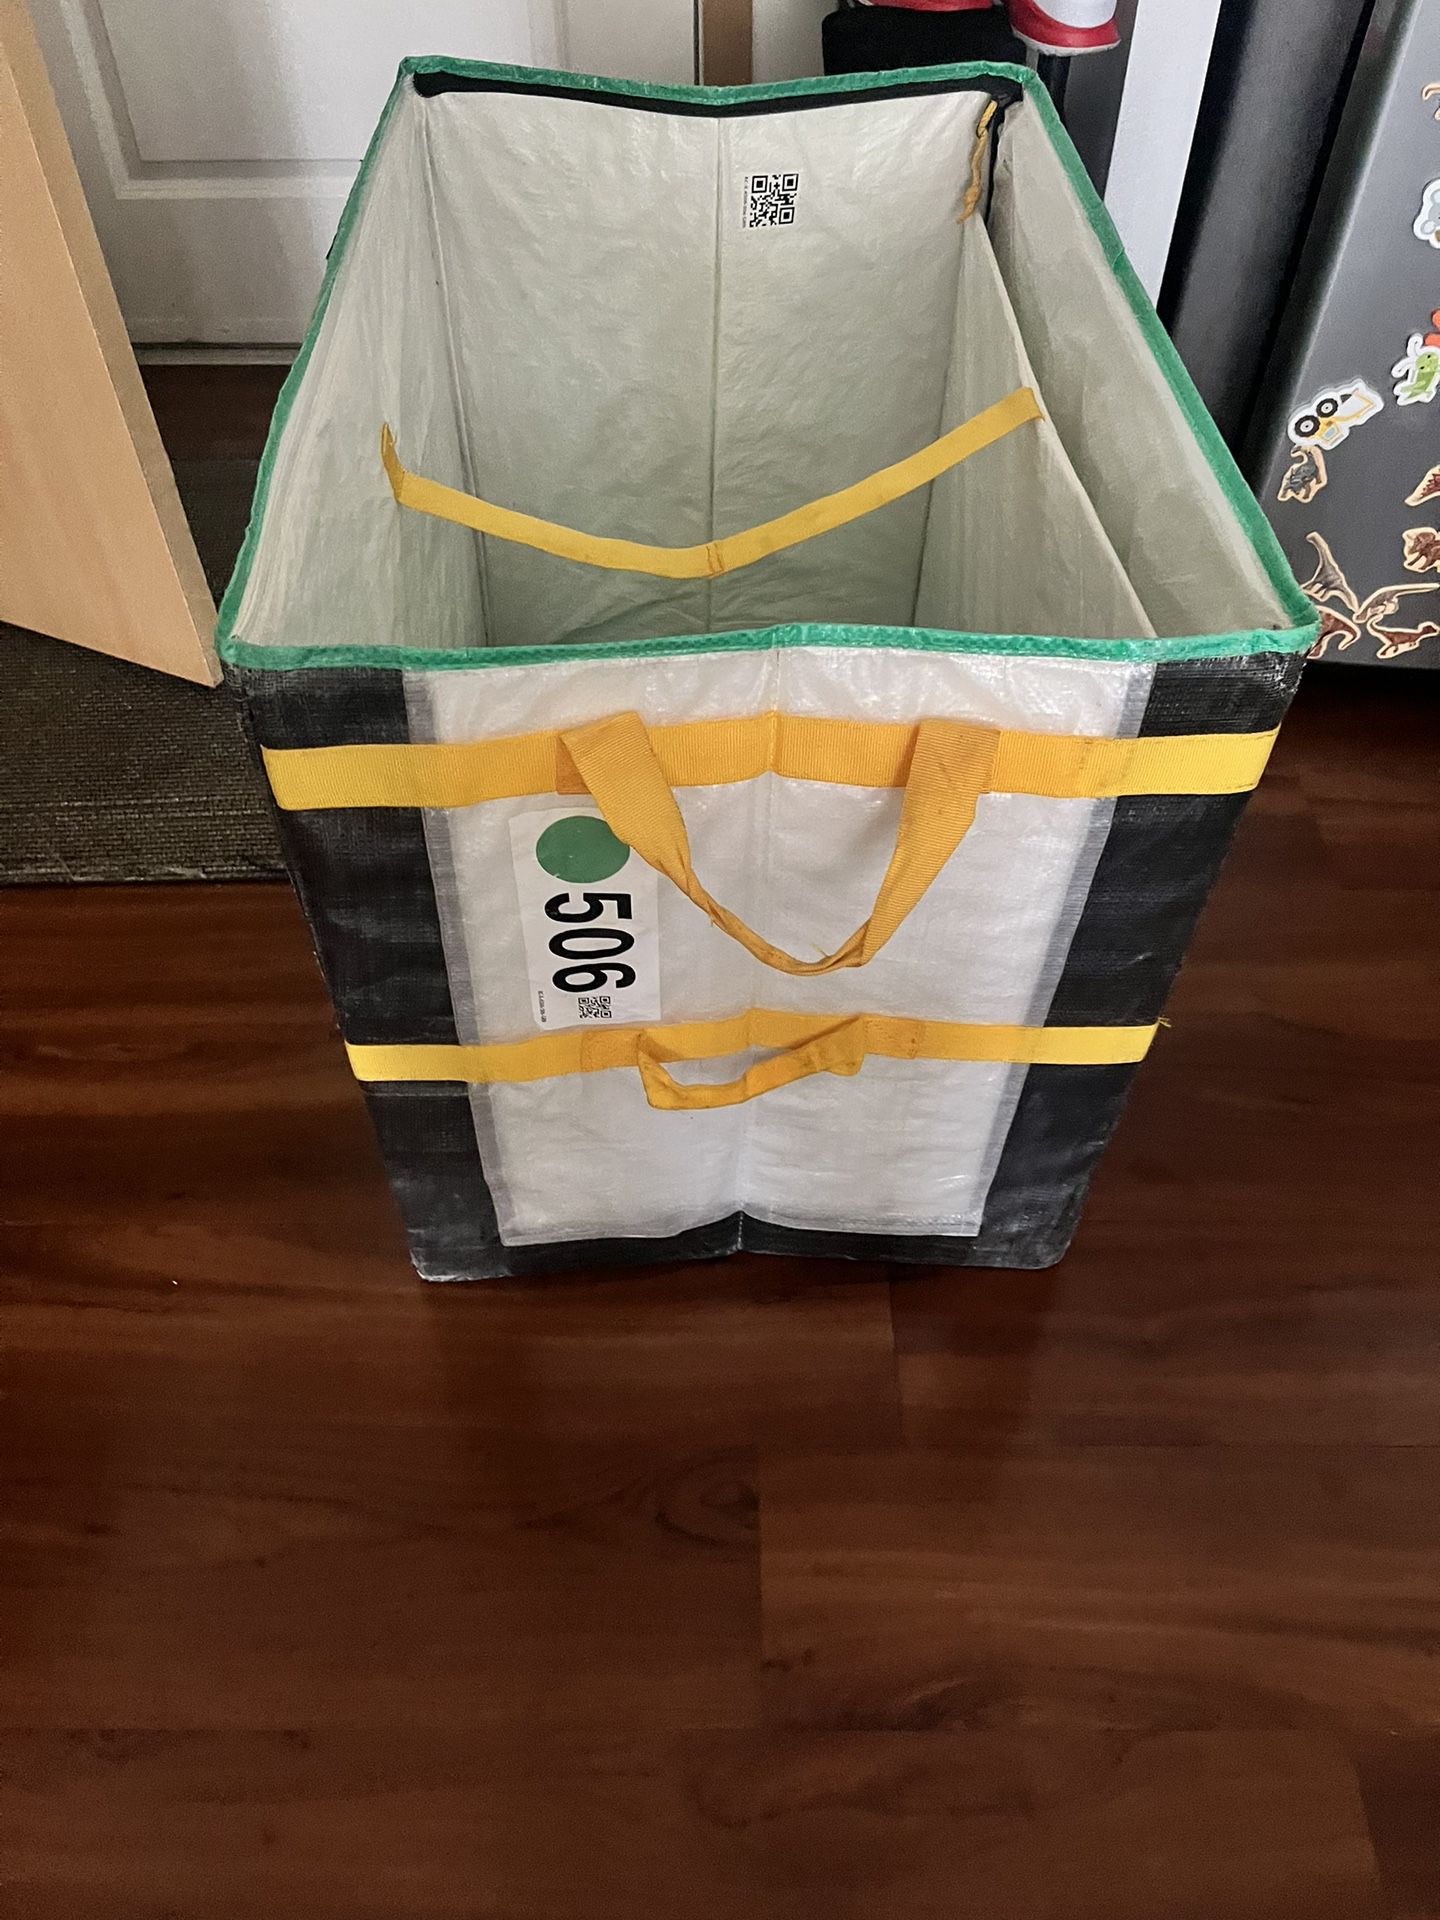 Amazon Courier Square Zipper Tote Bag